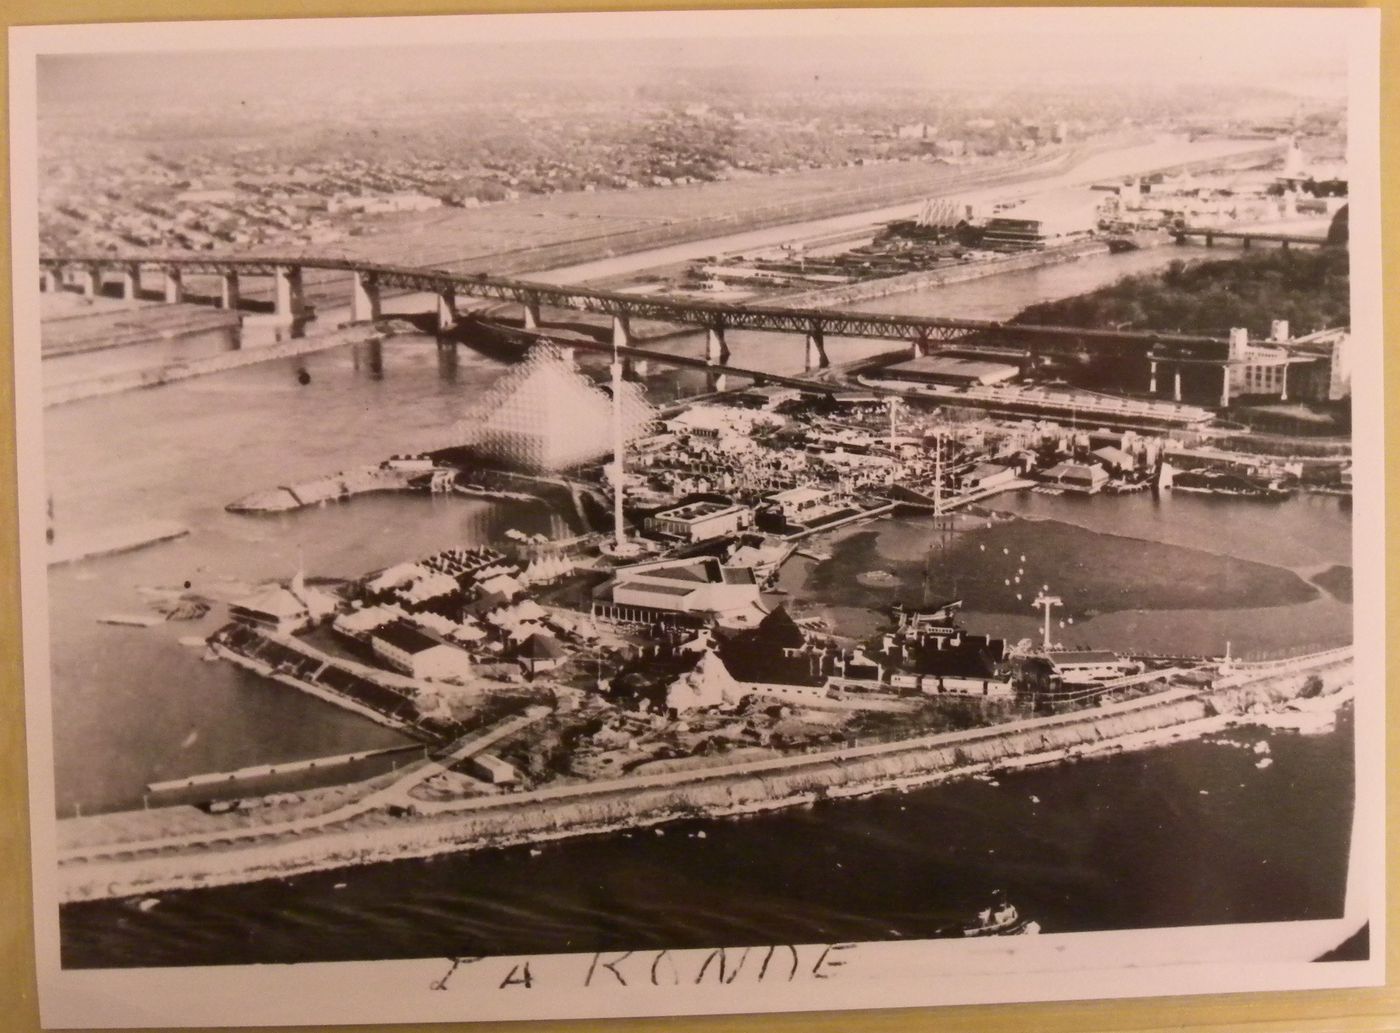 Aerial view of La Ronde on the Île Sainte-Hélène, Expo 67, Montréal, Québec